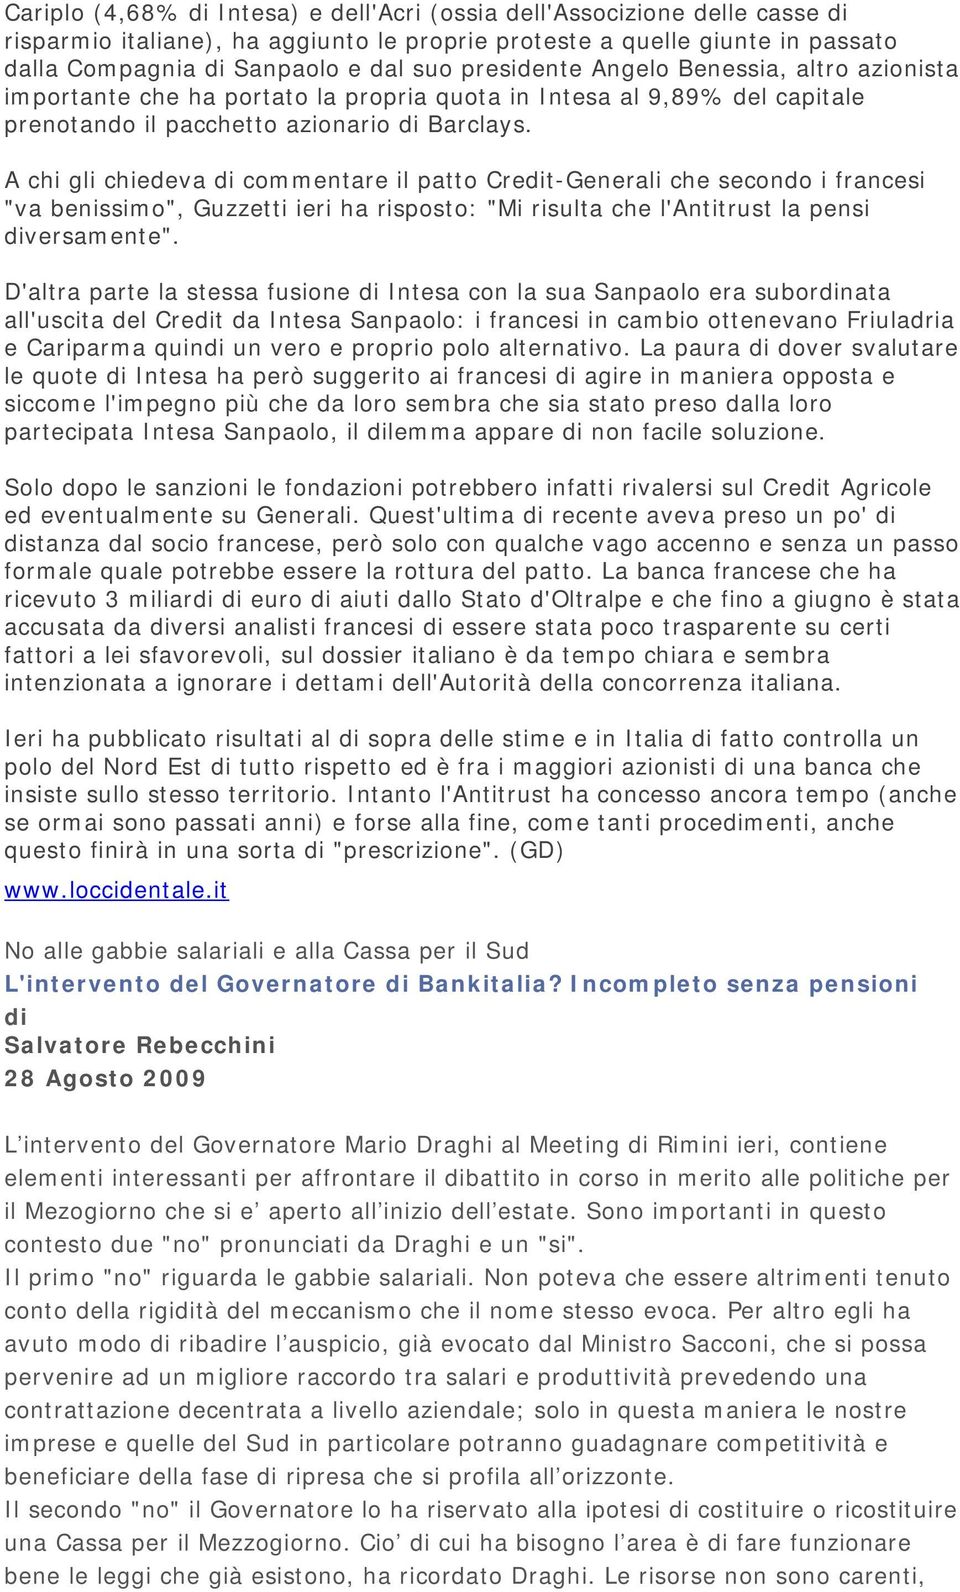 A chi gli chiedeva di commentare il patto Credit-Generali che secondo i francesi "va benissimo", Guzzetti ieri ha risposto: "Mi risulta che l'antitrust la pensi diversamente".